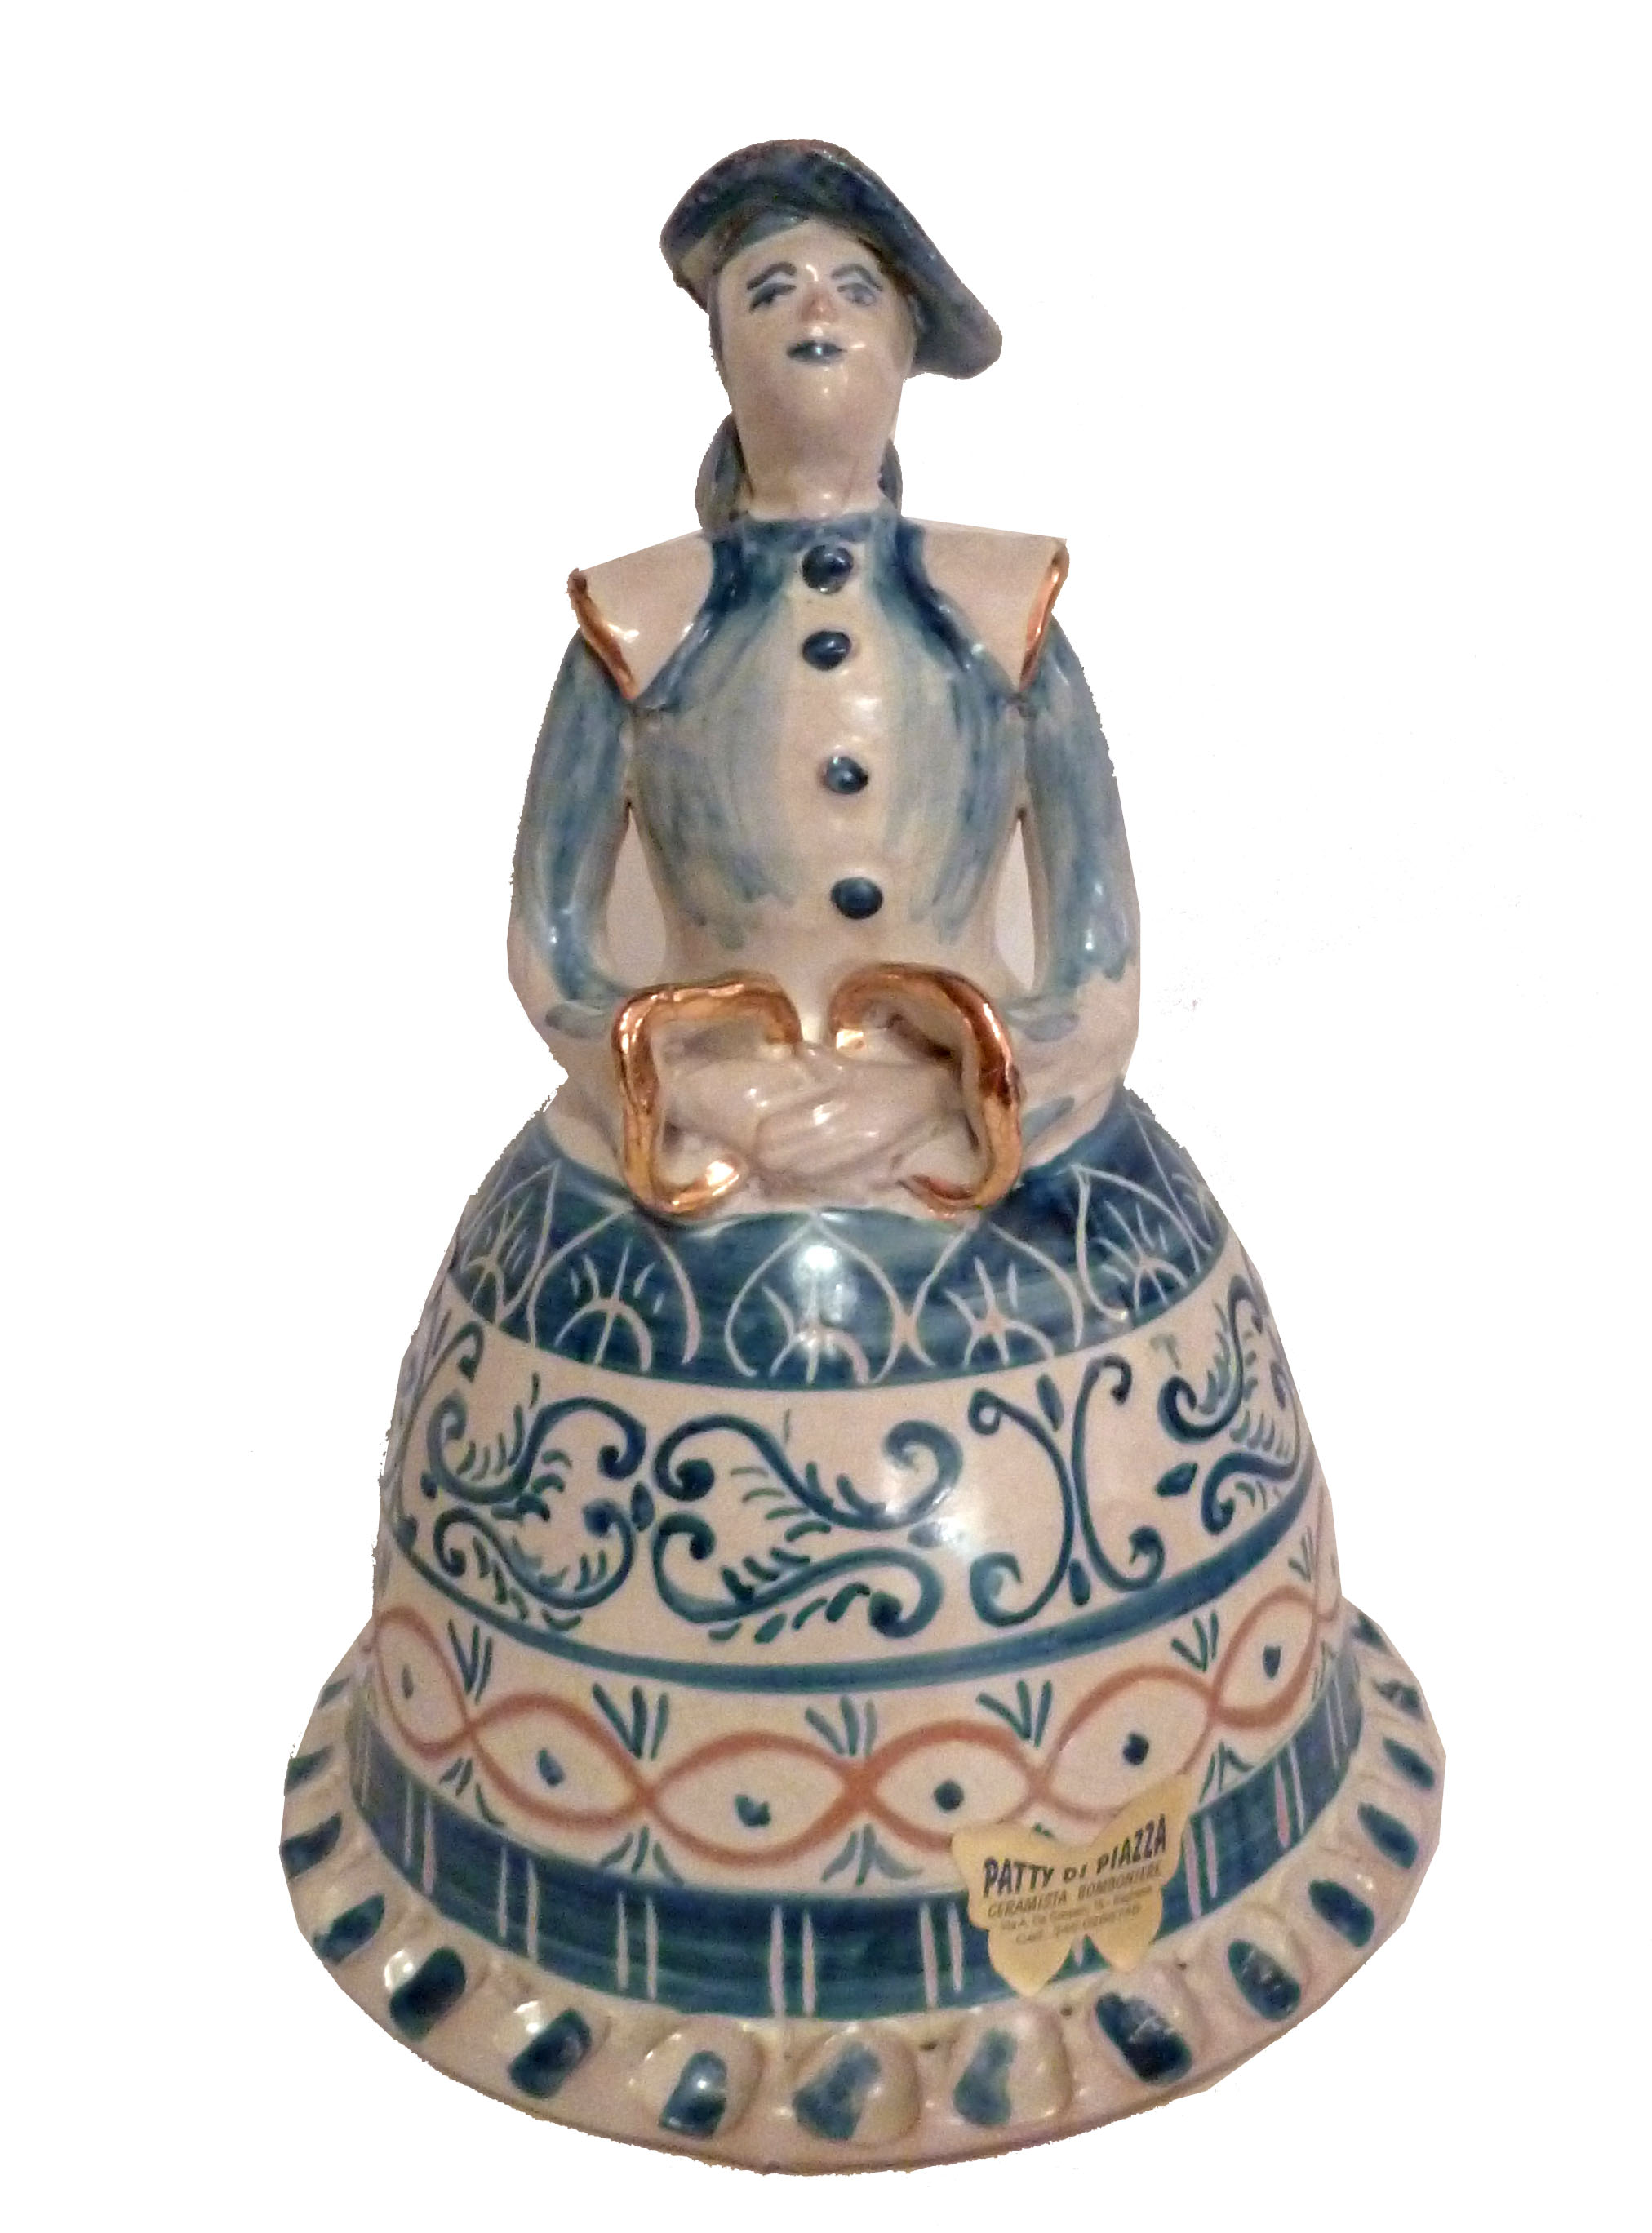 Bambola azzurra in stile anticato, dell'altezza di 27 cm